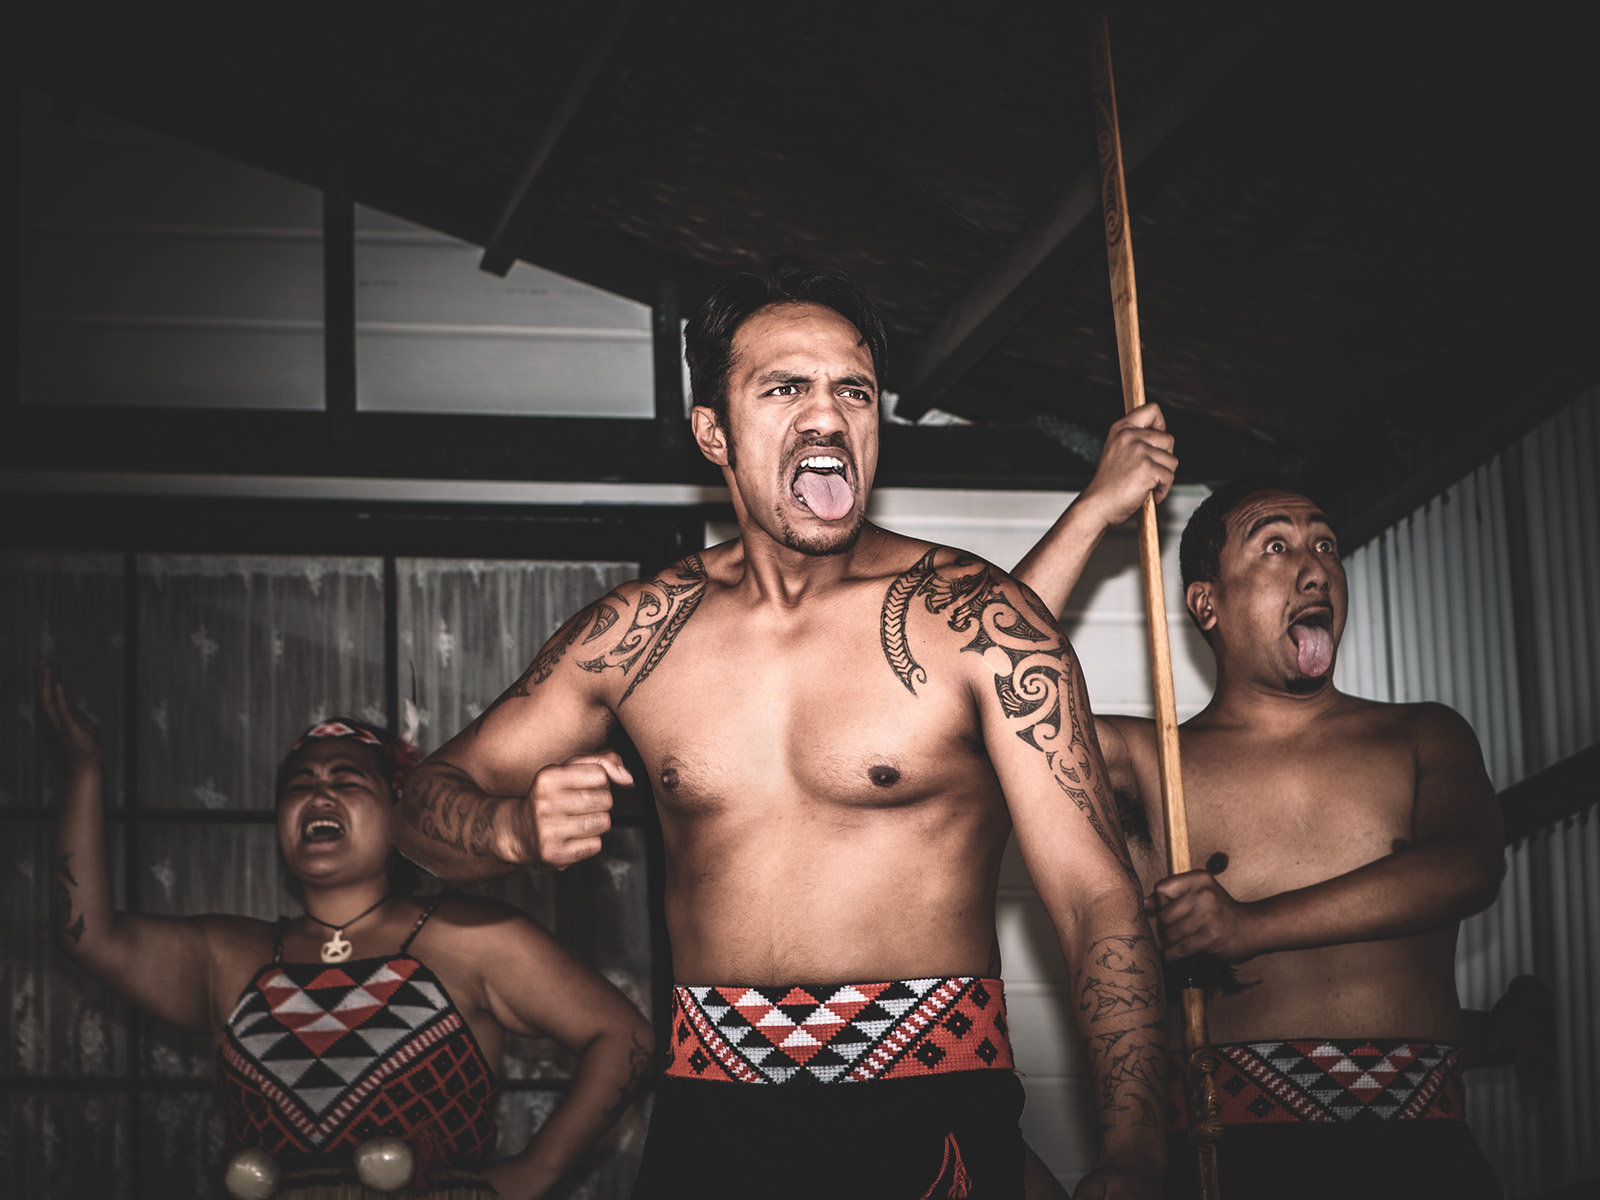 Maorové